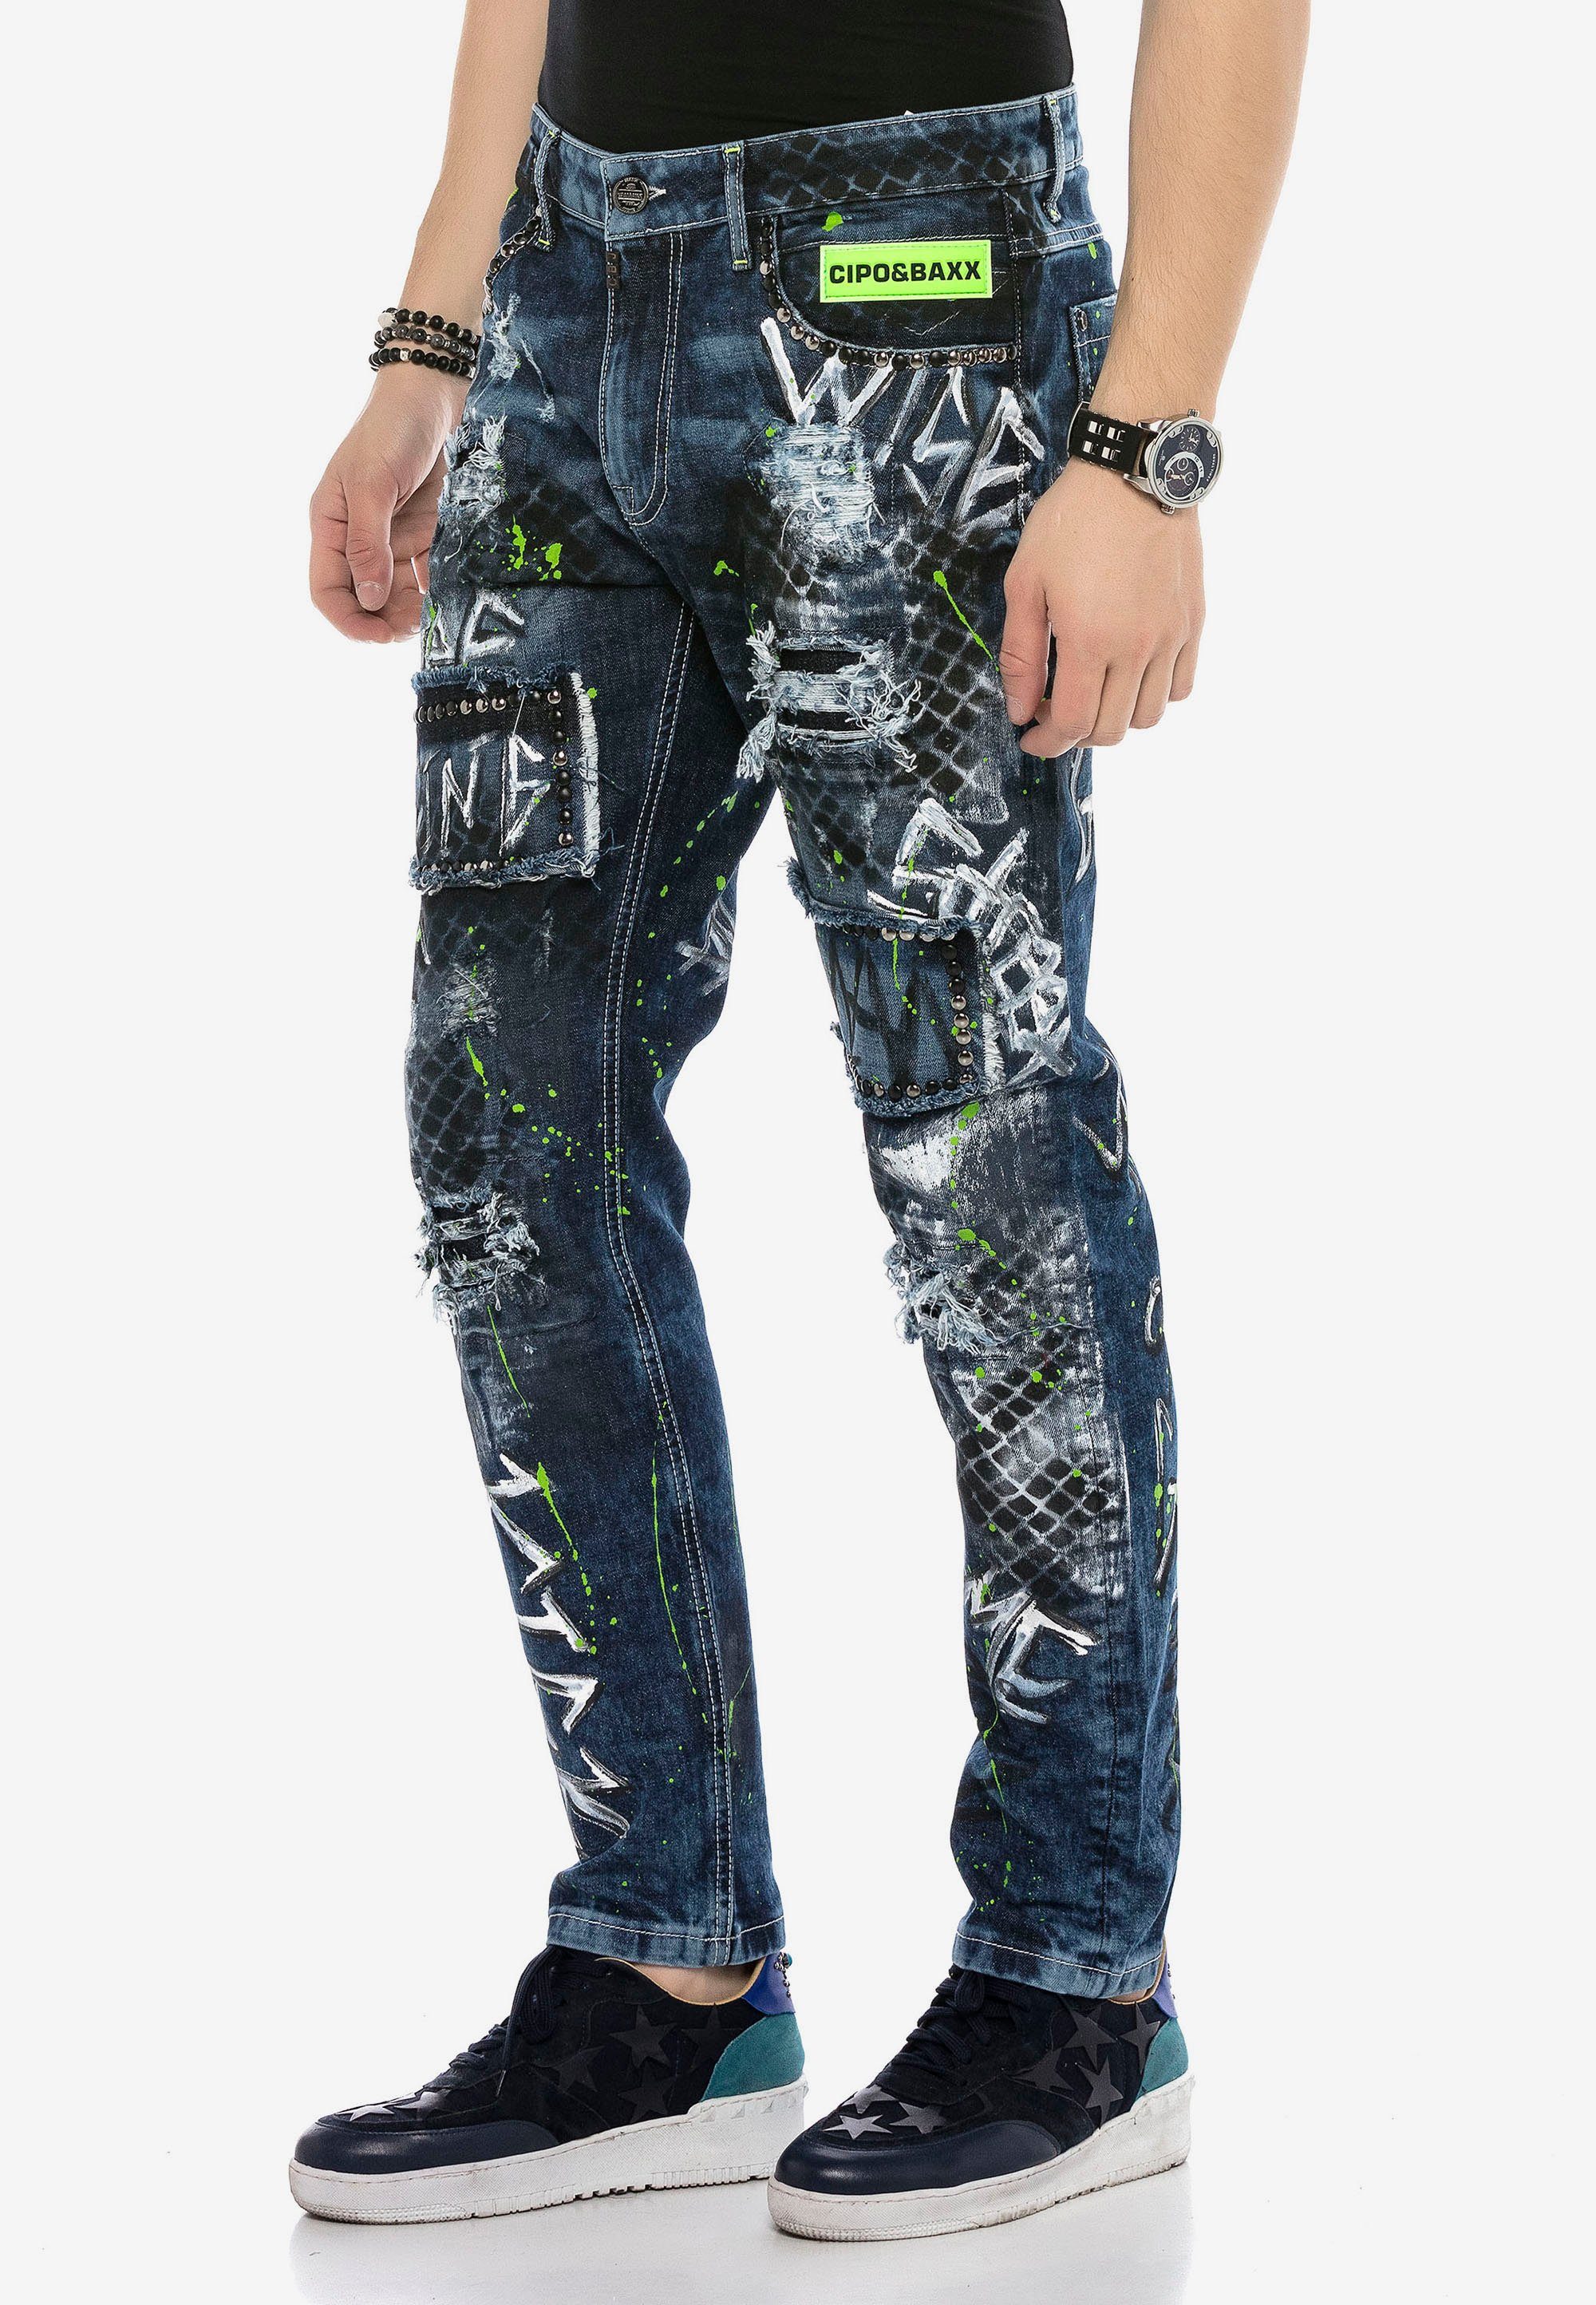 Jeans und Bequeme Baxx & Farbspritzern Nieten mit Cipo